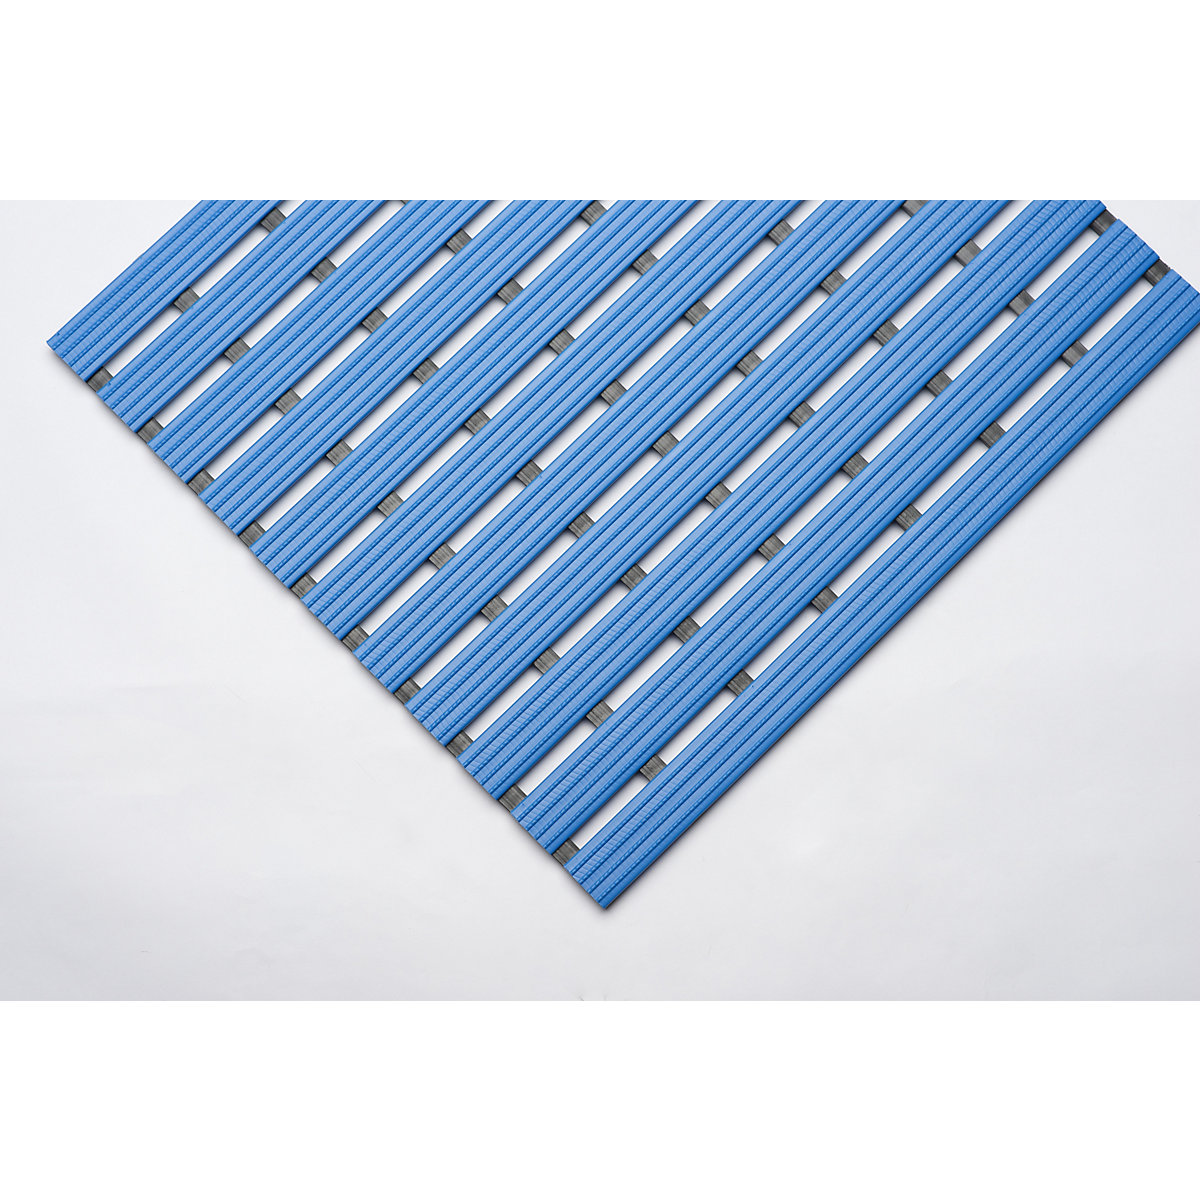 Esteira de perfil em PVC, por metro corrente, superfície de movimento em PVC duro, antiderrapante, largura 800 mm, azul